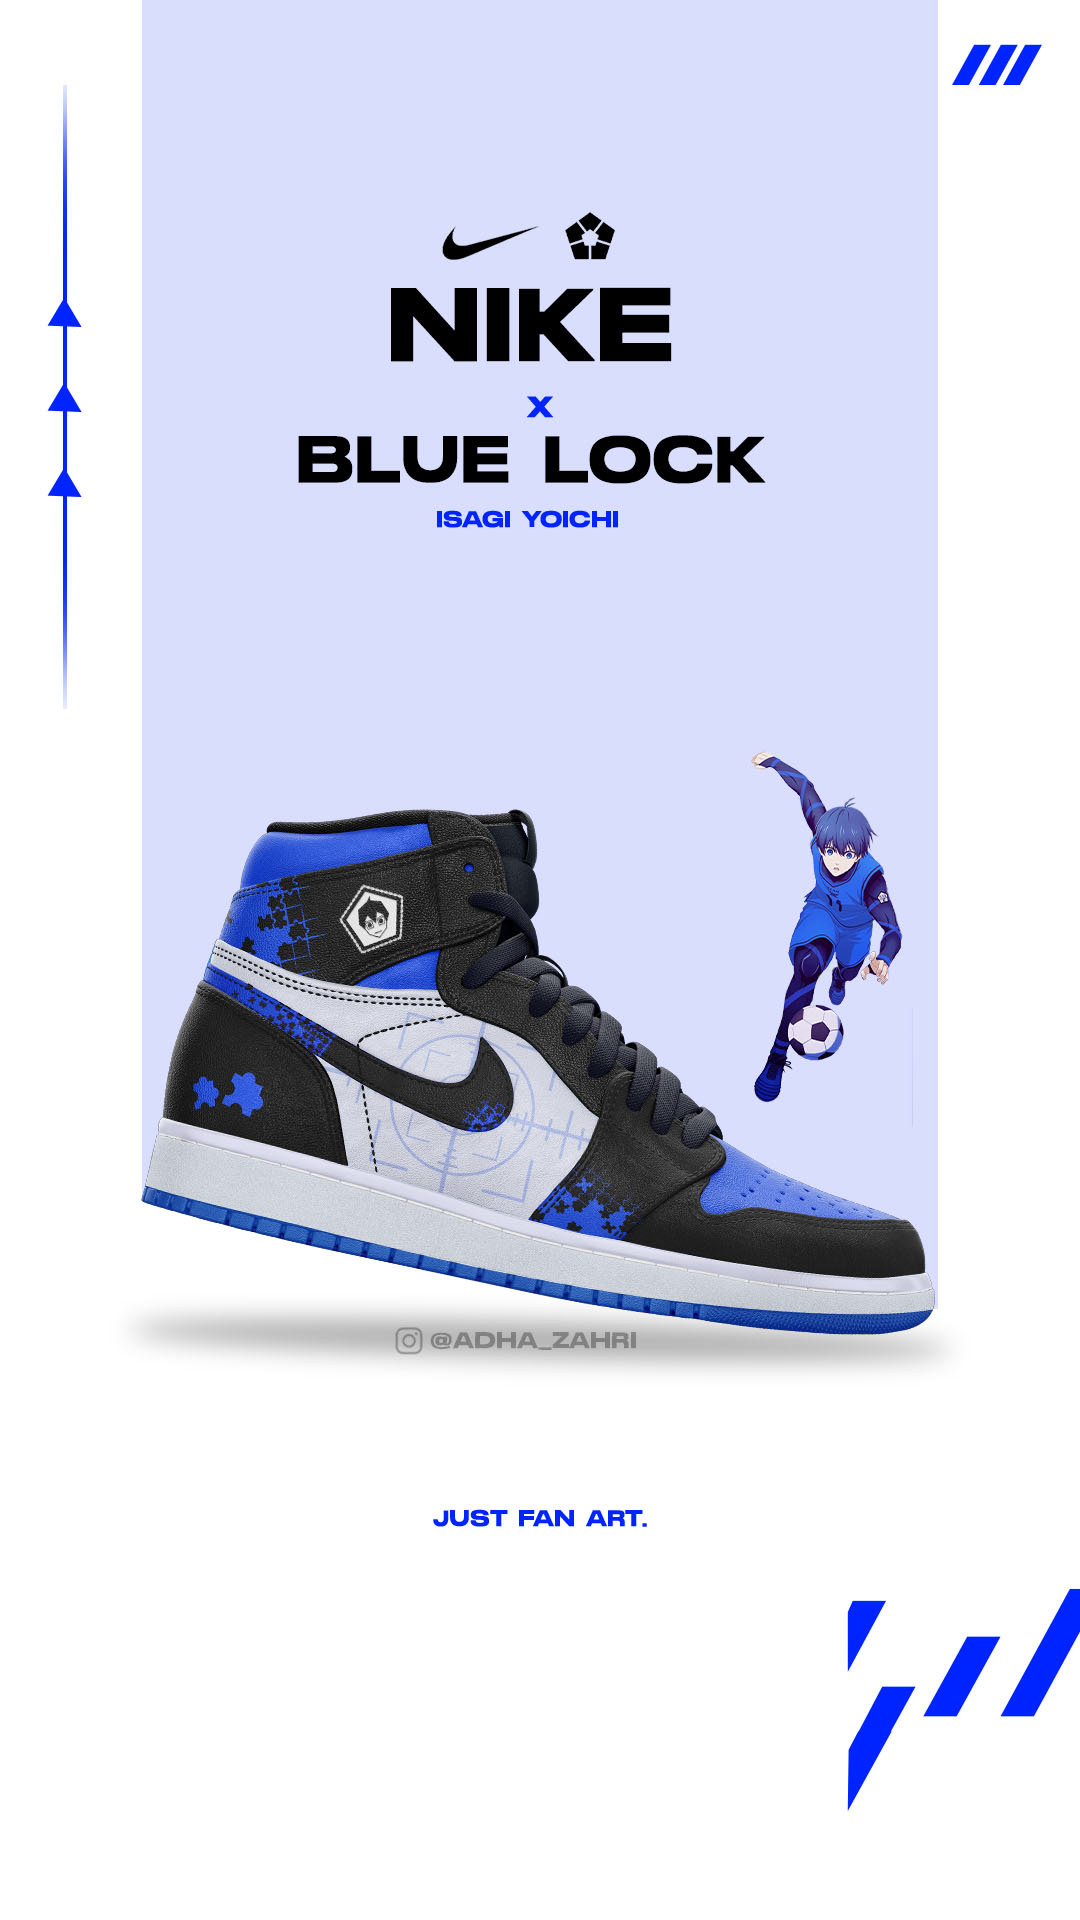 Blue Lock X Nike - Project on Behance